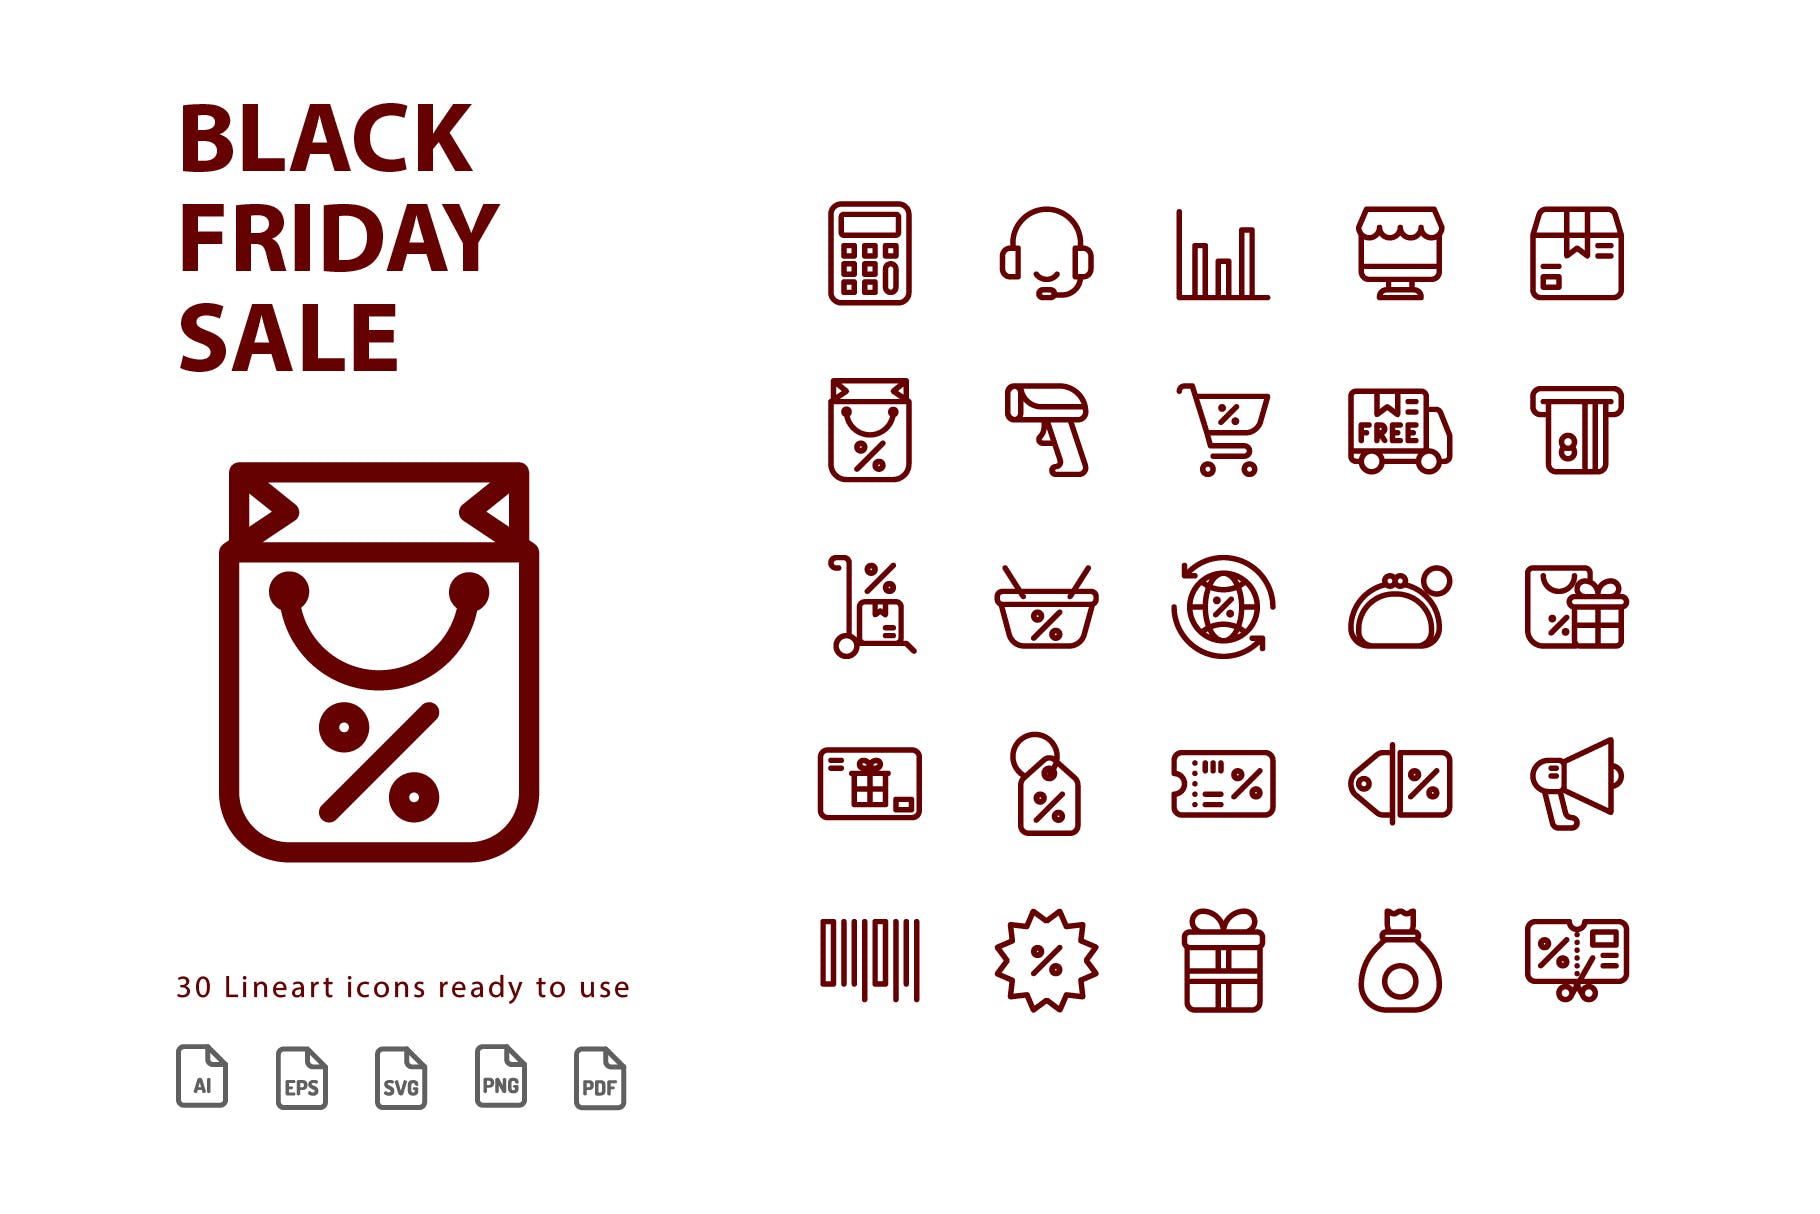 黒五电商促销主题线性图标素材 Black Friday Sale Lineart插图(1)